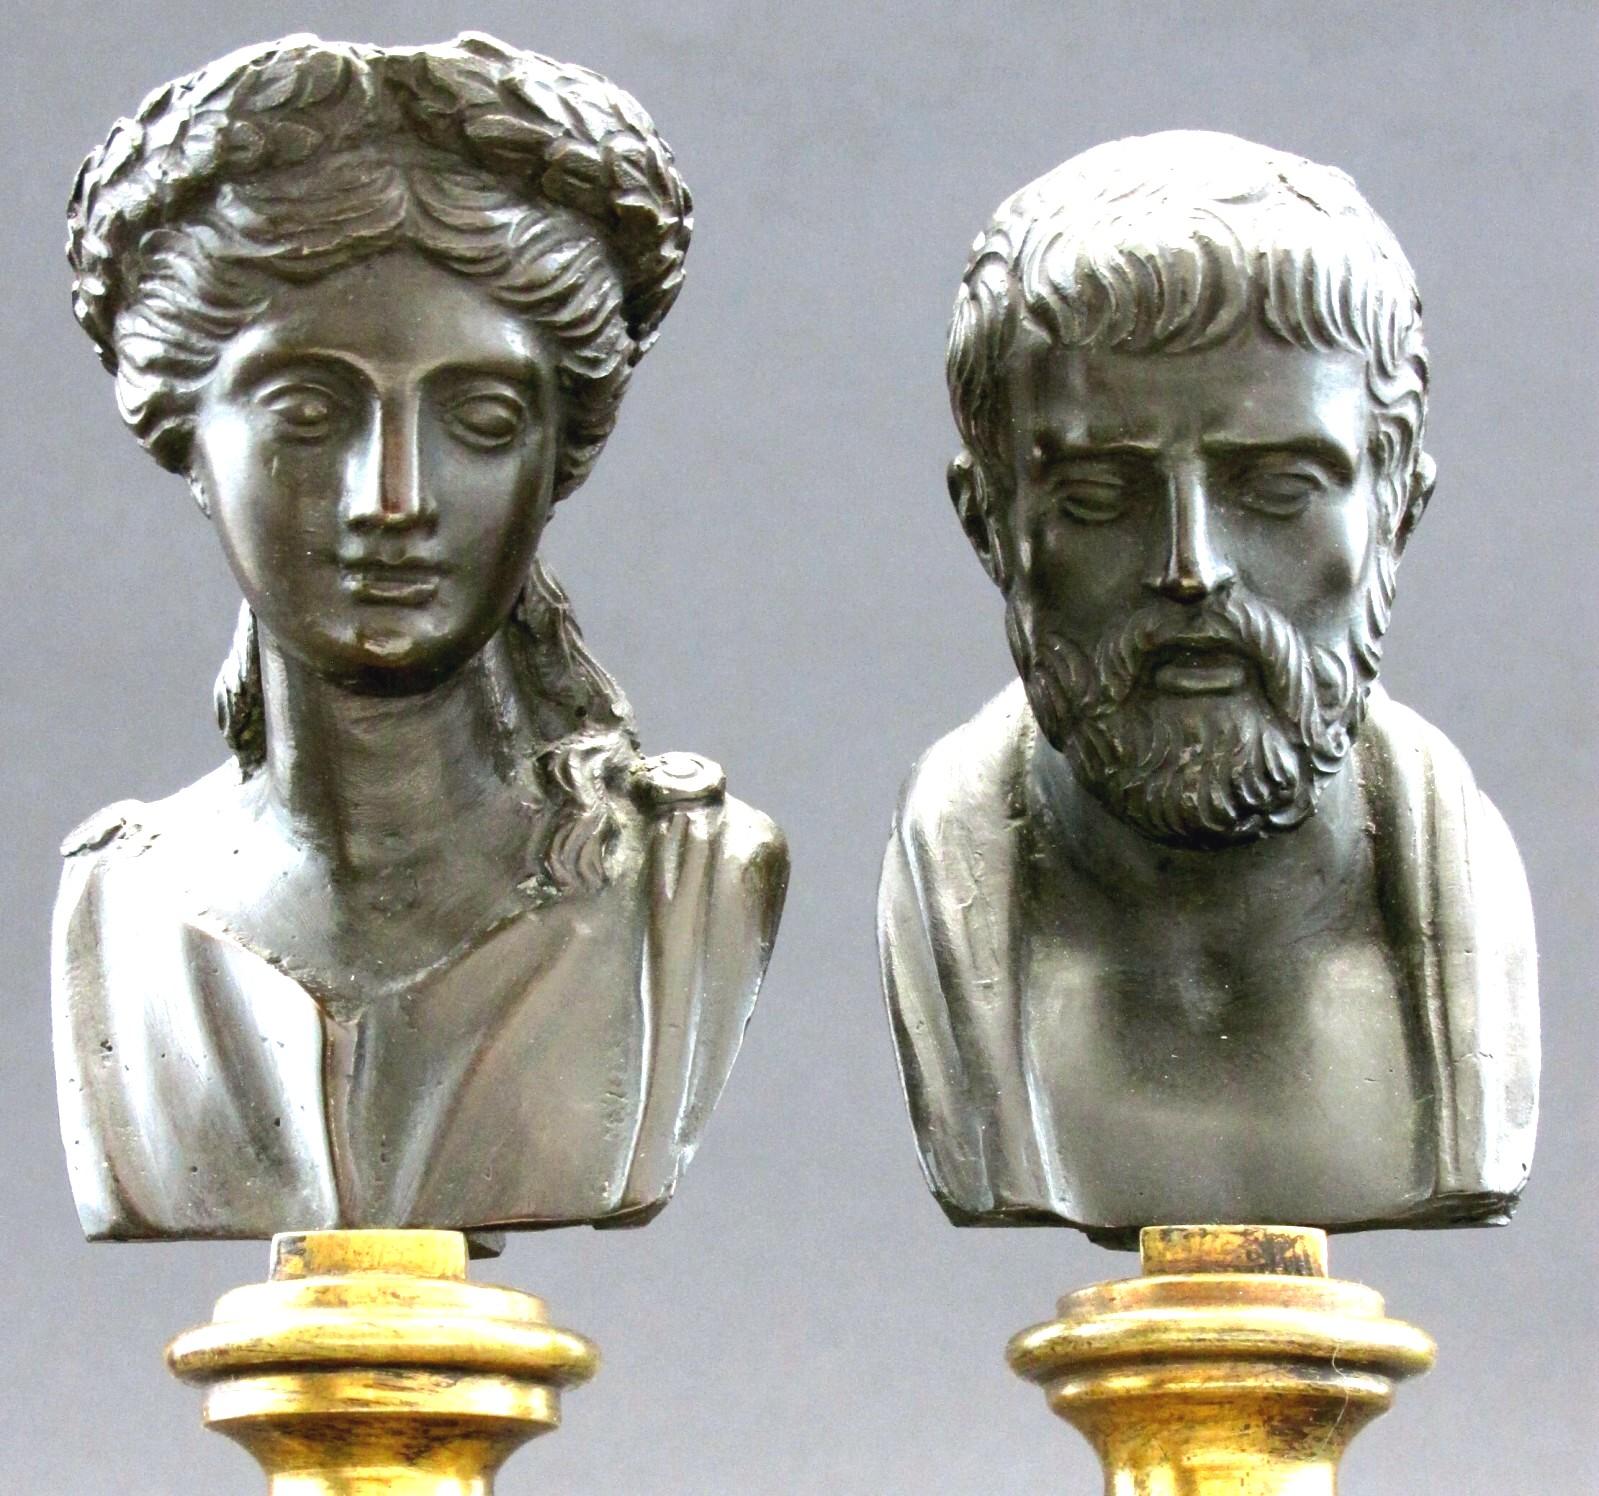 Très belle paire de bustes classiques en bronze reposant sur des colonnes en albâtre blanc ornées d'anneaux en métal doré, sur des socles carrés en marbre royal rouge ornés d'anneaux en métal doré. 
Apparemment non marqué, mais probablement produit